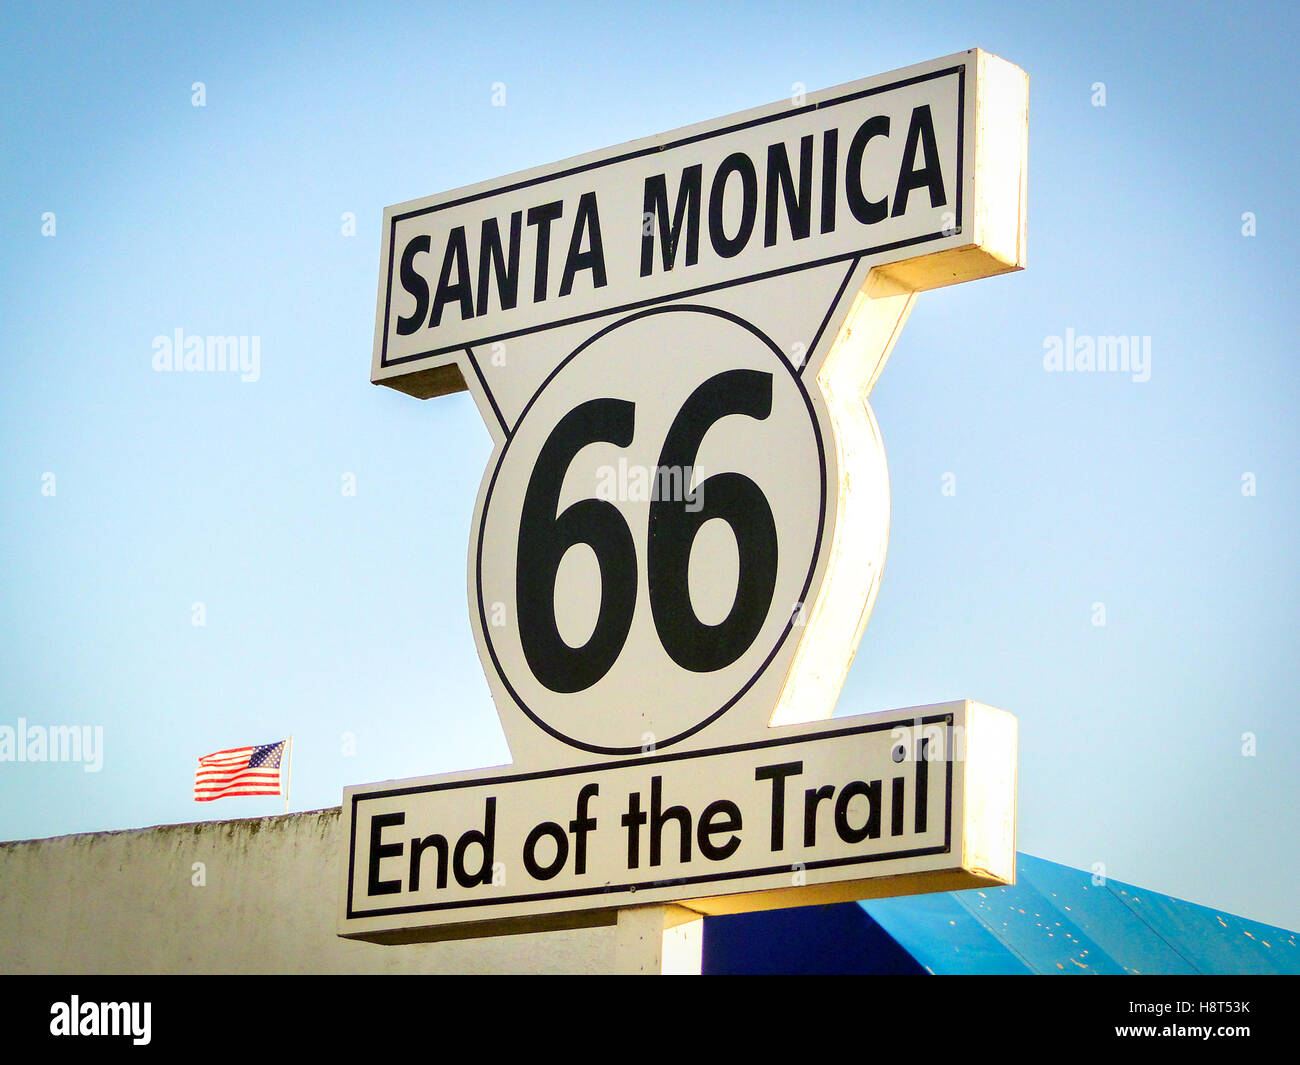 Route de Santa Monica 66 fin du sentier inscription California Los Angeles vue vignette vintage Banque D'Images